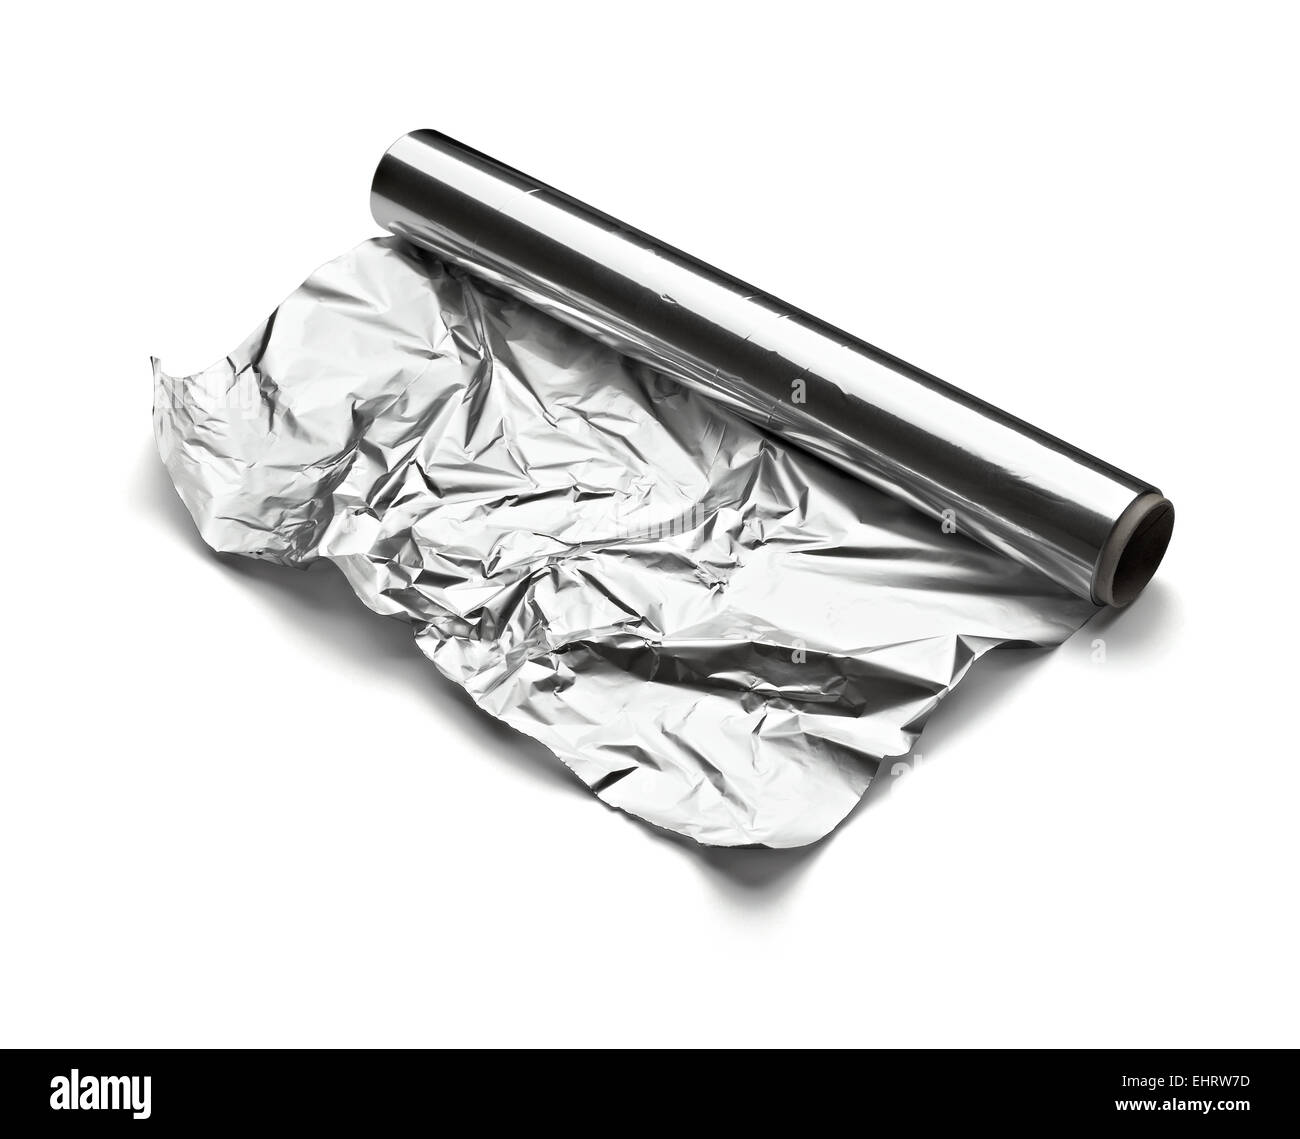 aluminum foil Stock Photo